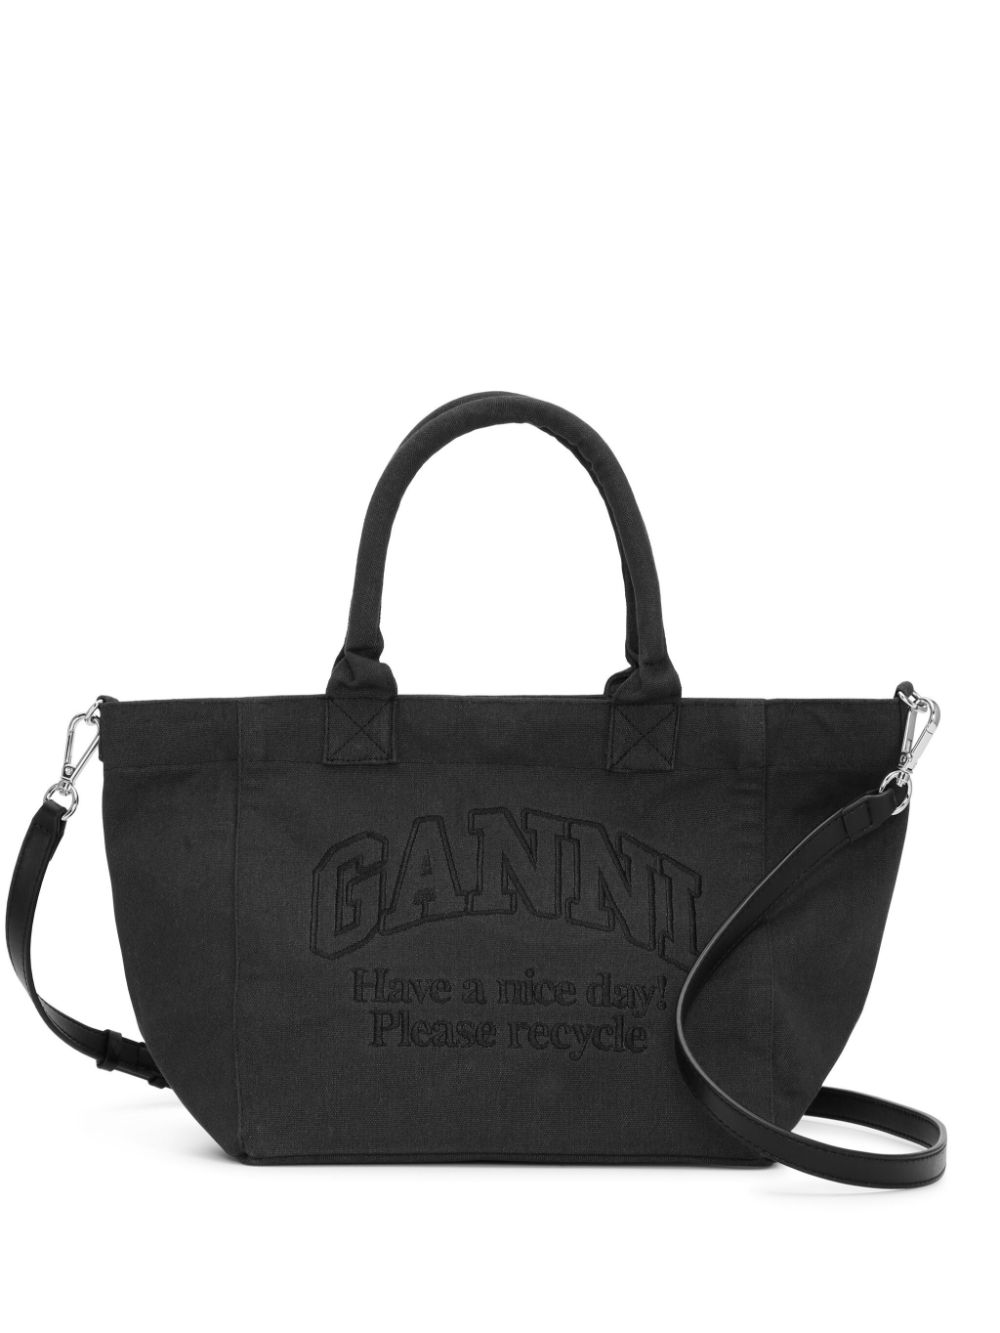 GANNI logo-embroidered tote bag - Black von GANNI